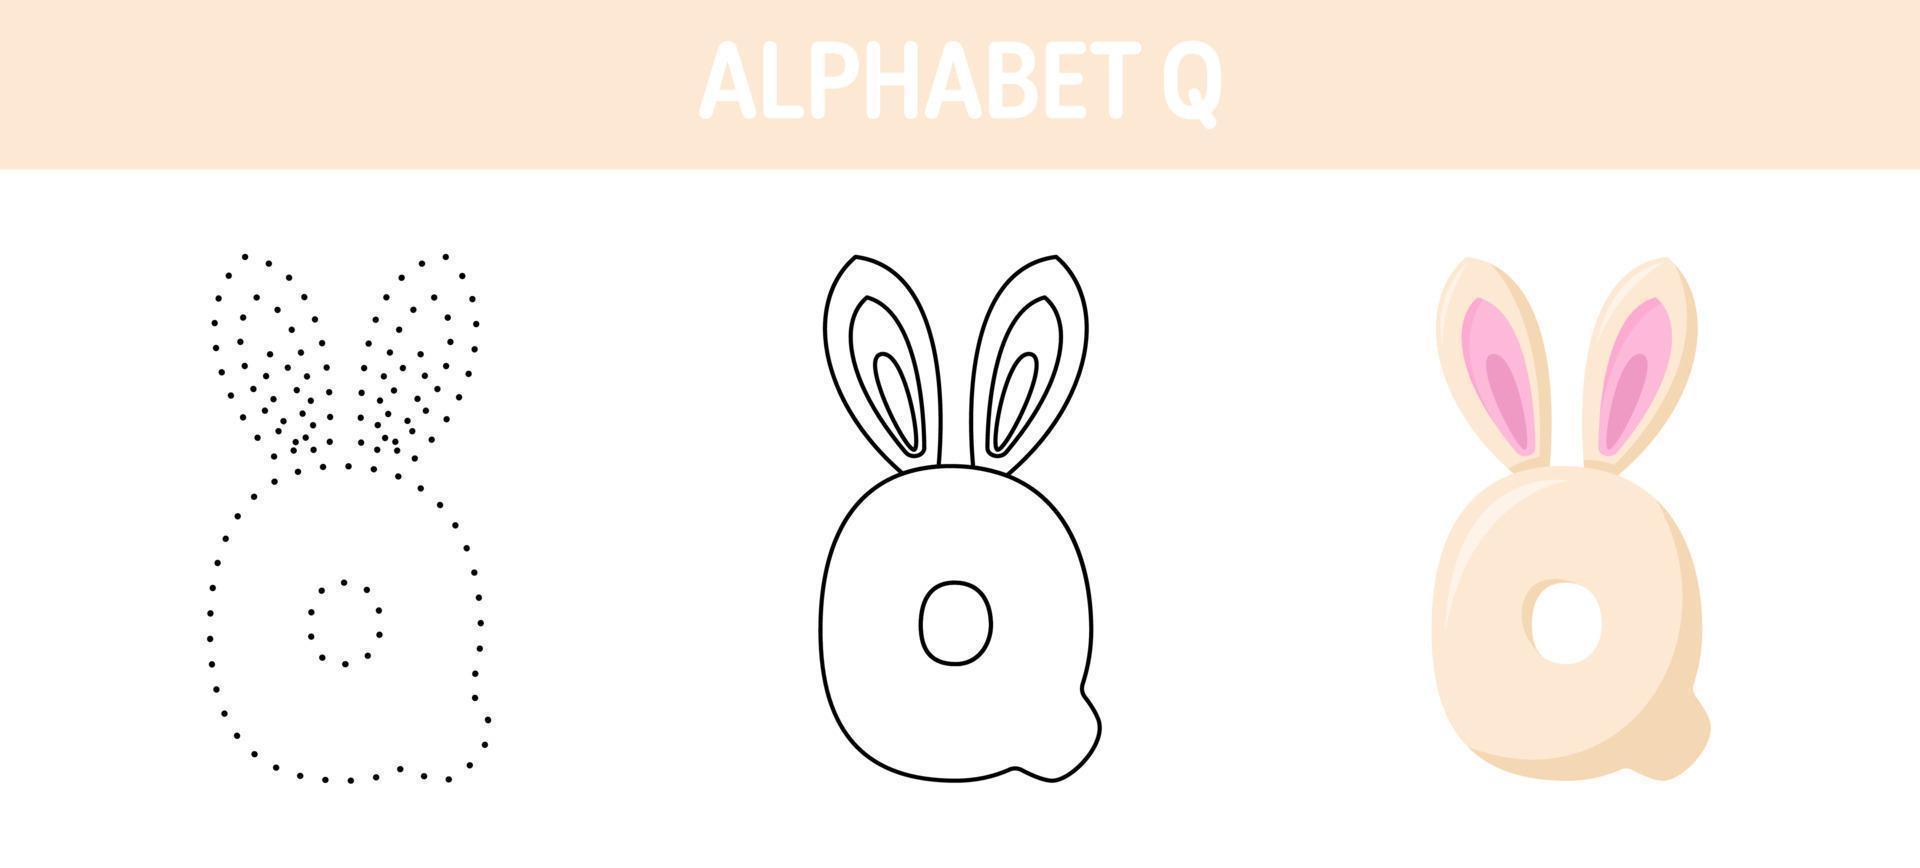 alfabeto q tracciato e colorazione foglio di lavoro per bambini vettore